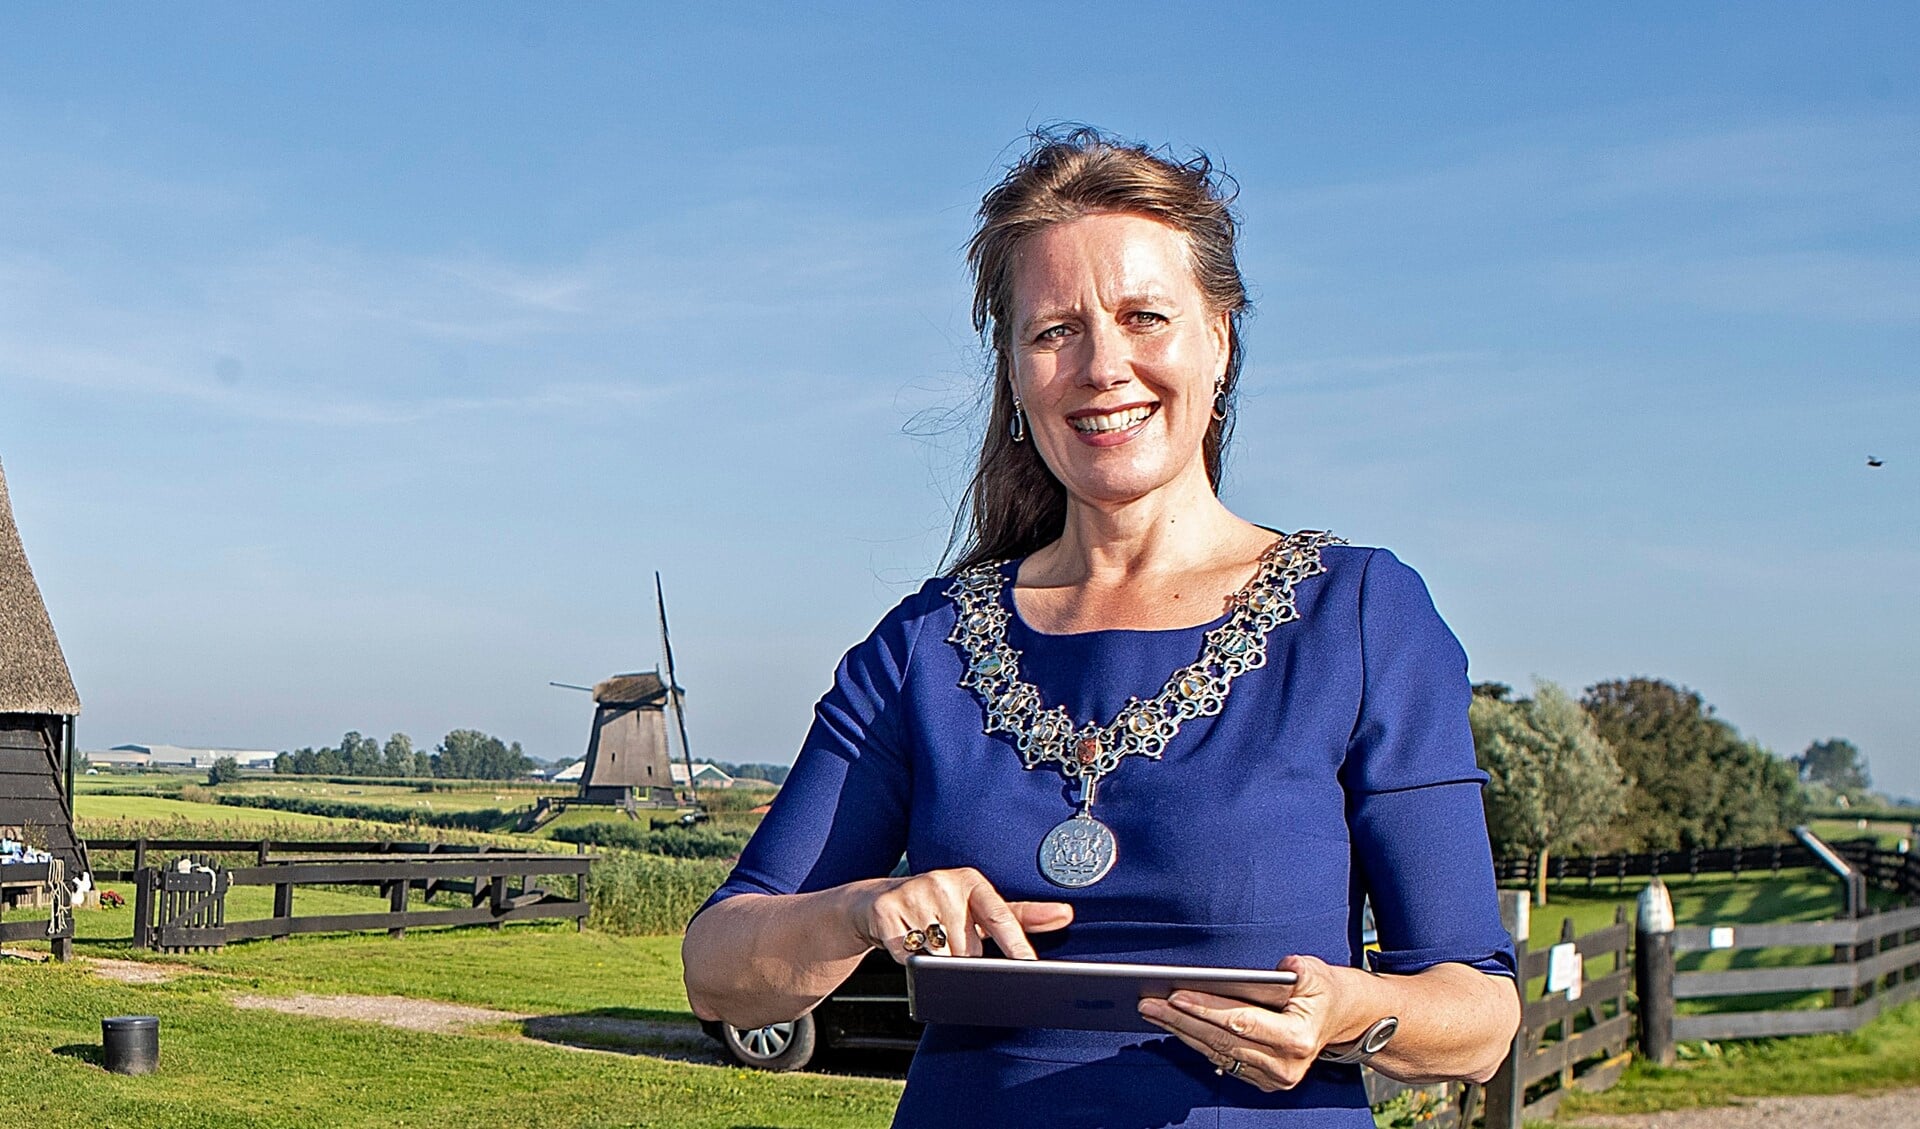 ALKMAAR - 27-08-2021, Anja Schouten molenprijs. Bij Molen G, Molendijk 8 tussen Ursem en Schermerhorn stemt burgemeester Anja Schouten voor de Molenprijs.